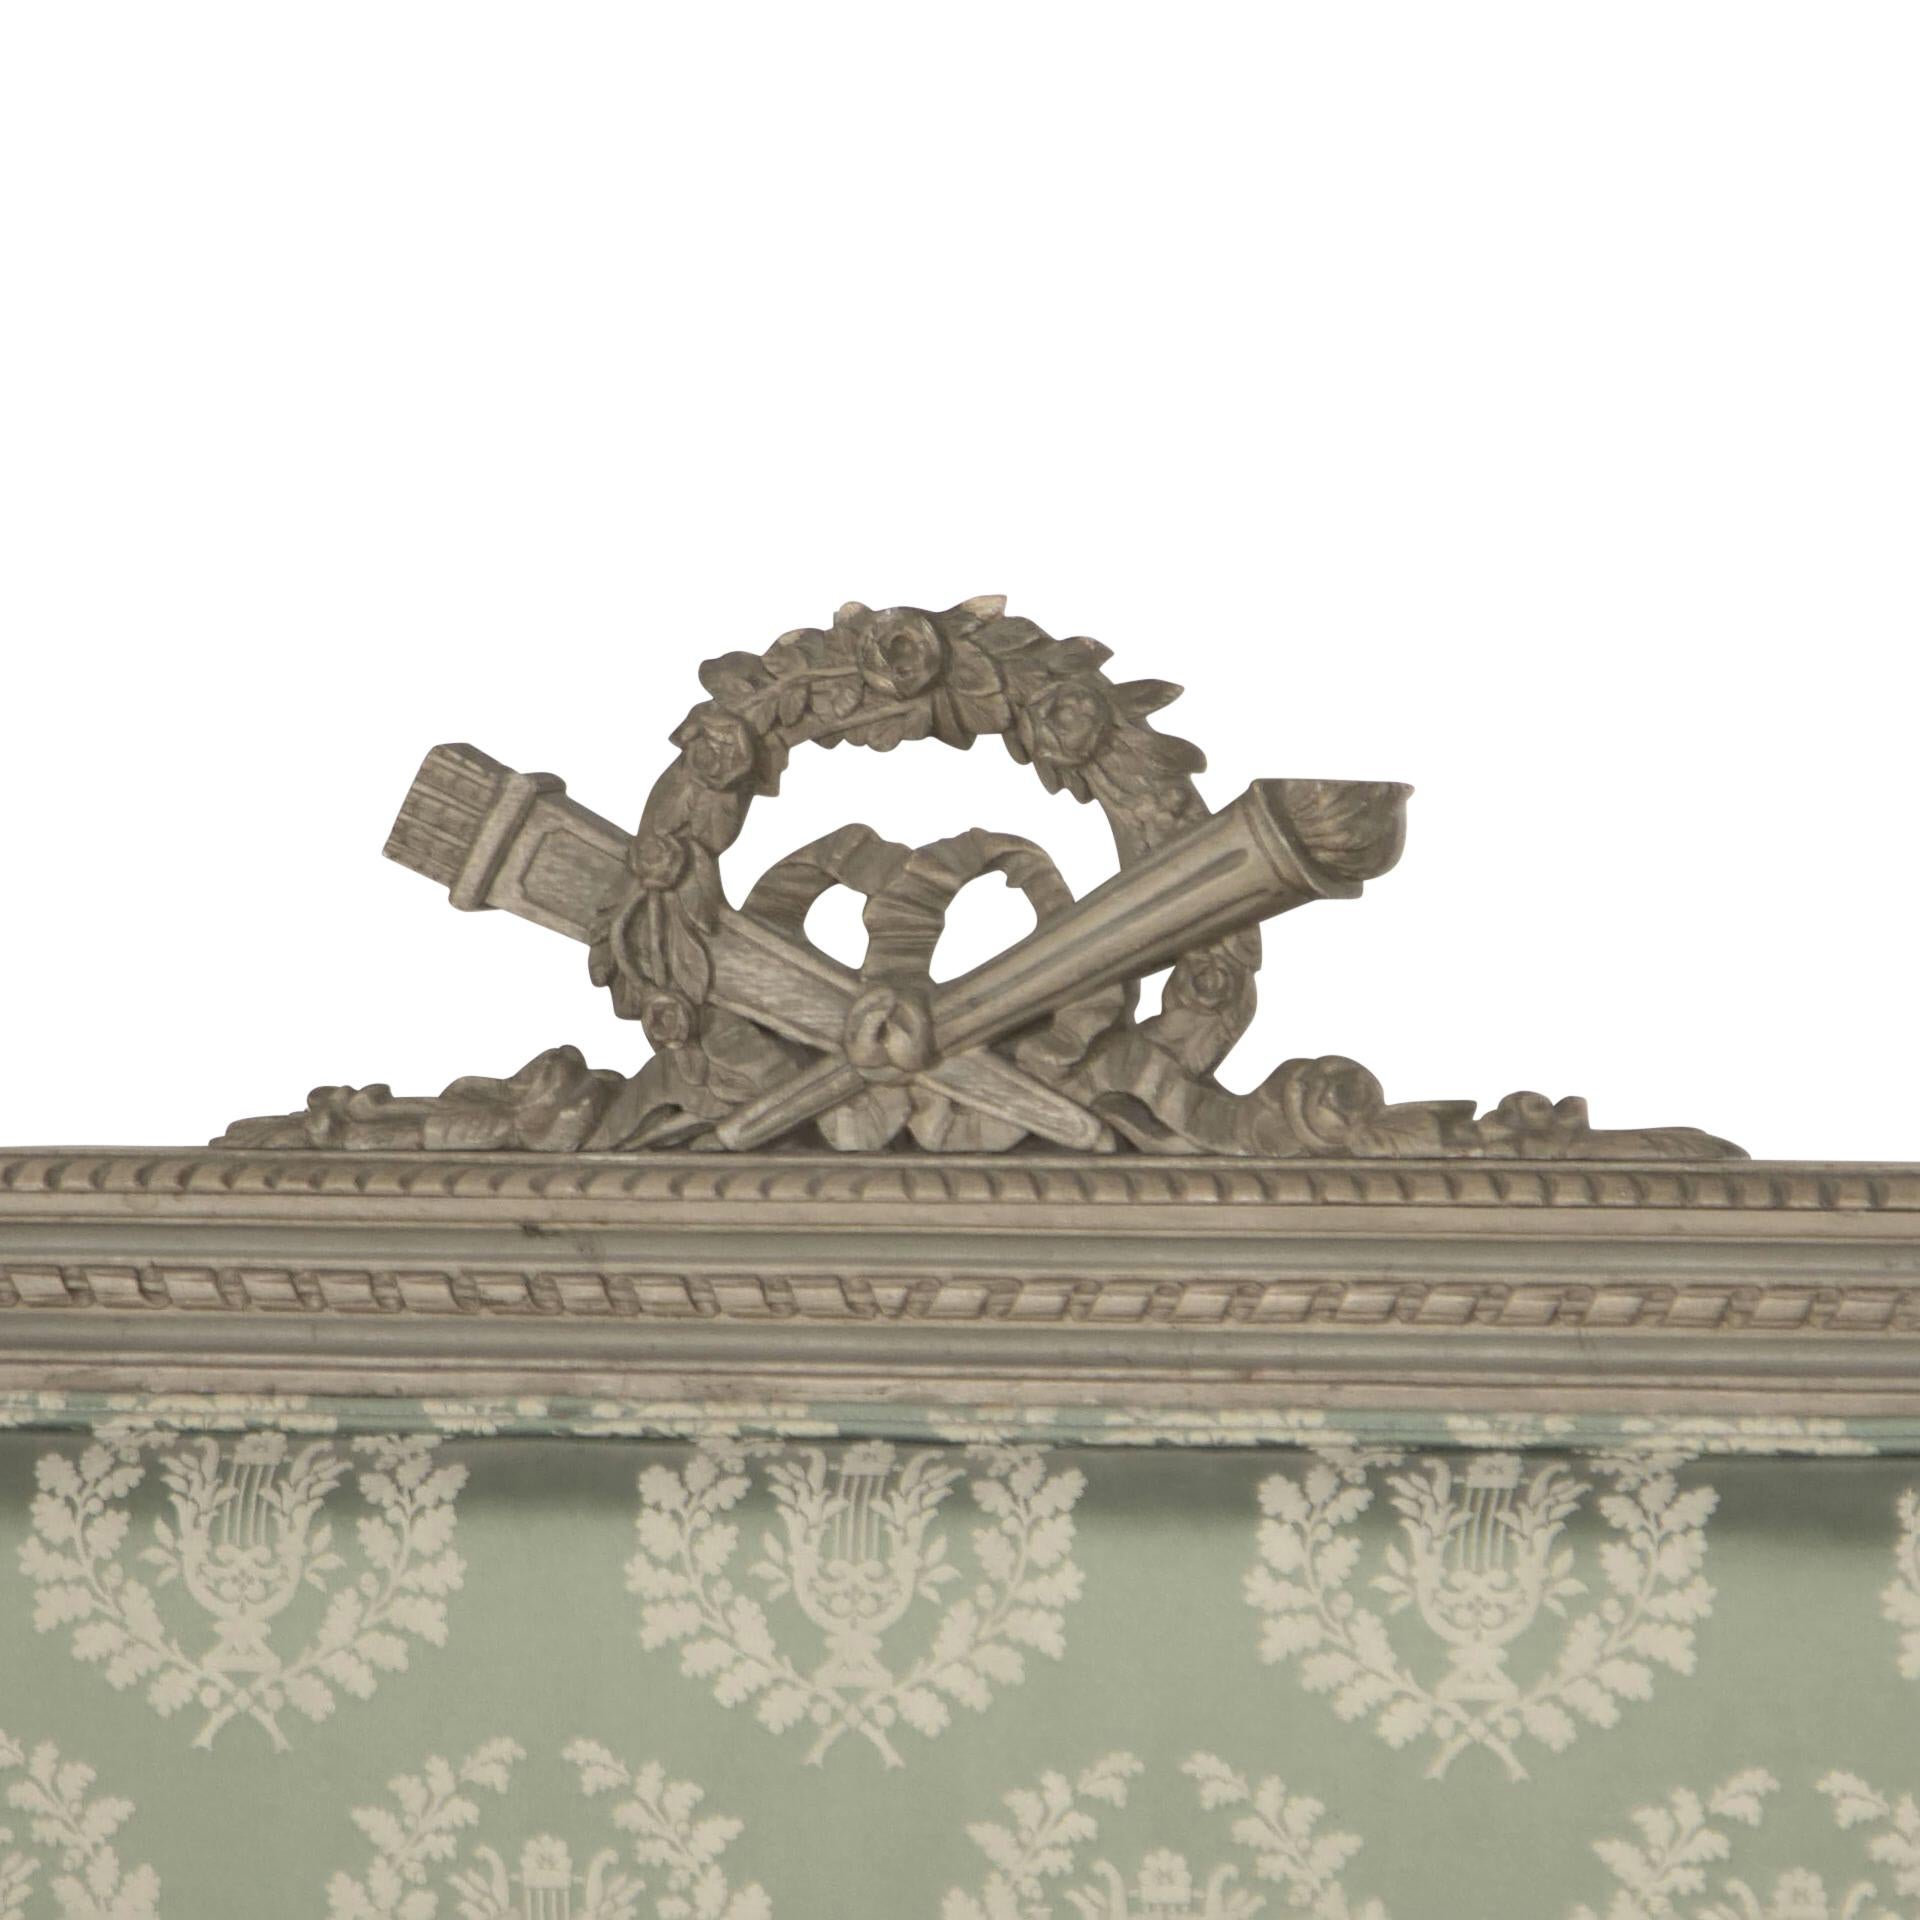 Französisches Bett aus dem 19. Jahrhundert im Stil Louis 16, dekorativ geschnitzt, bemalt, gepolstert mit einem Lorbeerkranz im Vintage-Stil. 
Designgewebe von Design Archive.